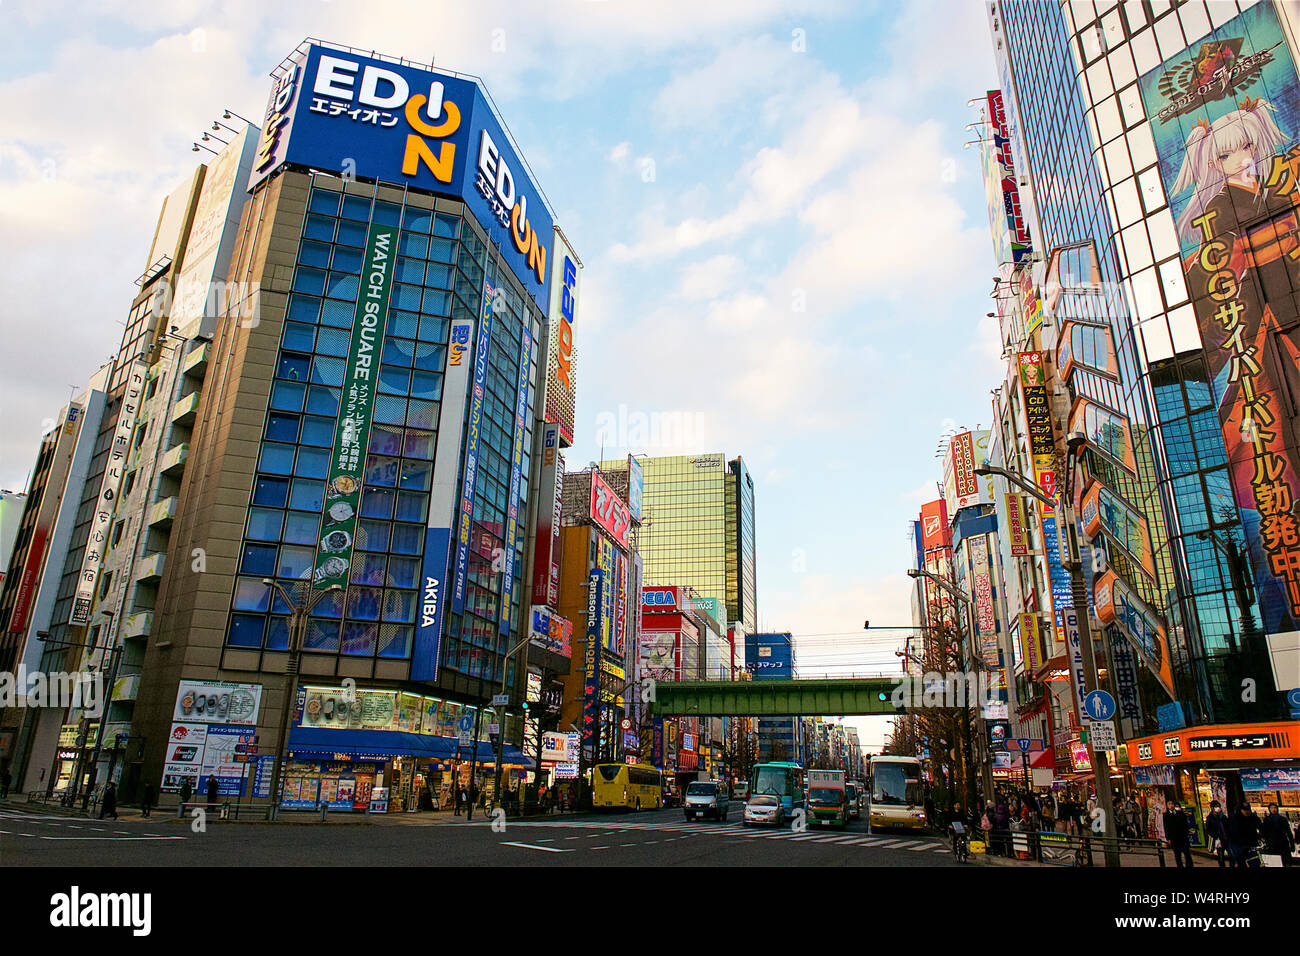 Rue commerçante et gratte-ciel avec des publicités, Akihabara, Tokyo, Japon Banque D'Images